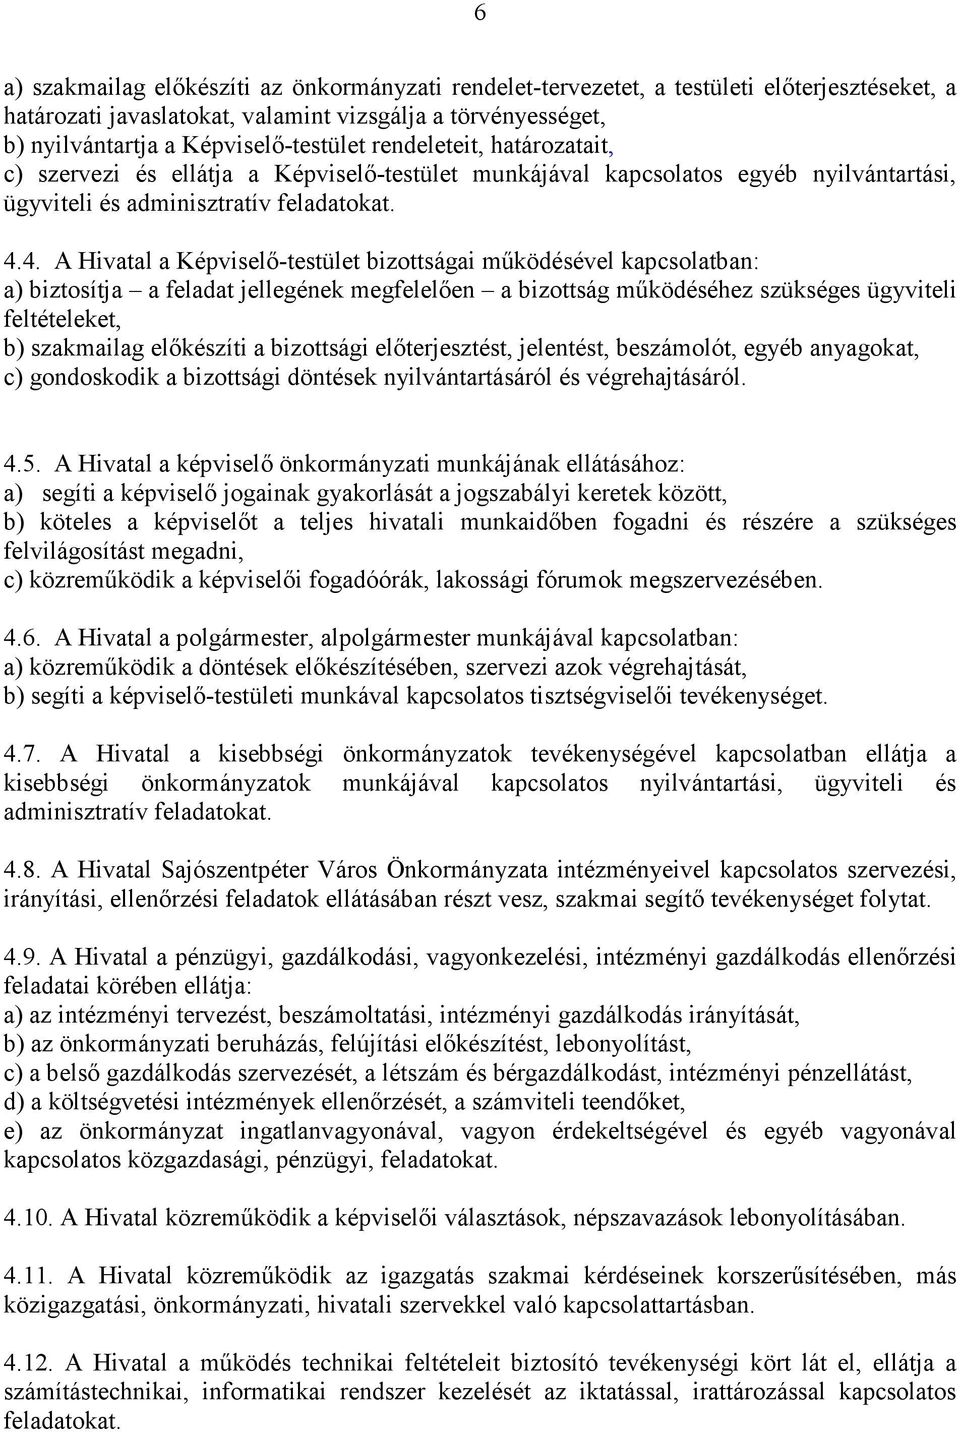 4. A Hivatal a Képviselı-testület bizottságai mőködésével kapcsolatban: a) biztosítja a feladat jellegének megfelelıen a bizottság mőködéséhez szükséges ügyviteli feltételeket, b) szakmailag